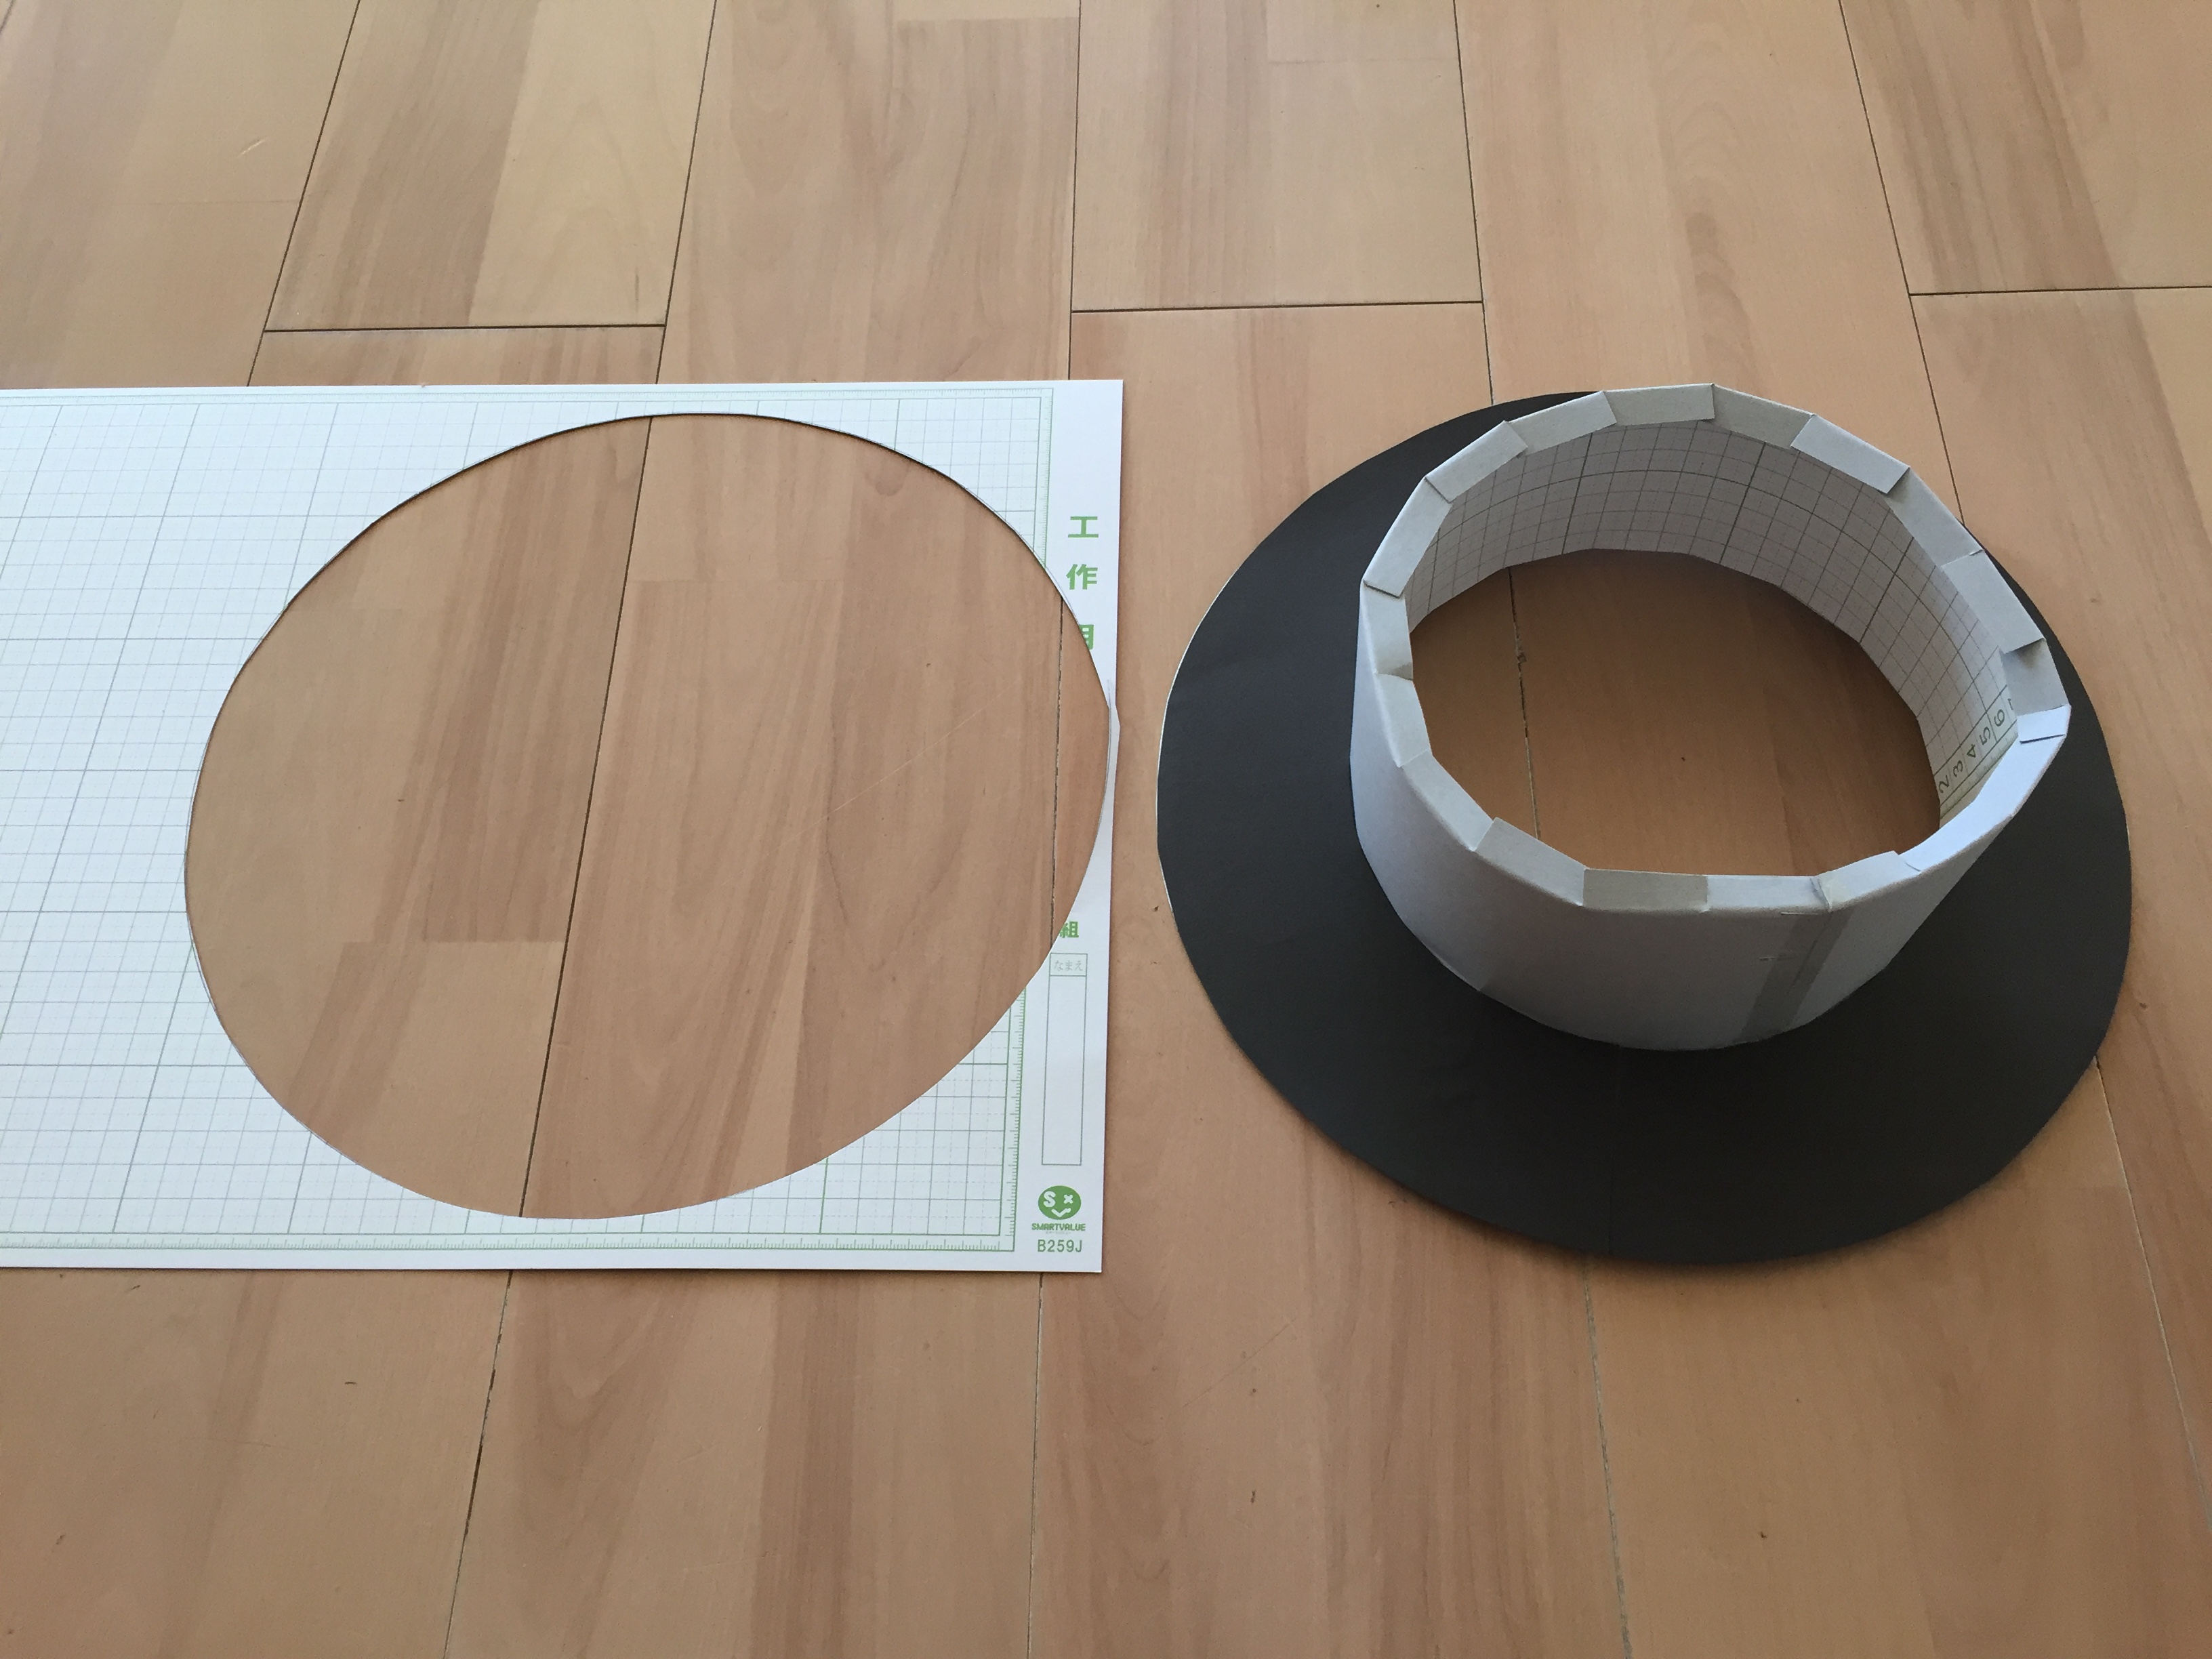 発表会衣装に 画用紙を使った帽子 ハット の作り方